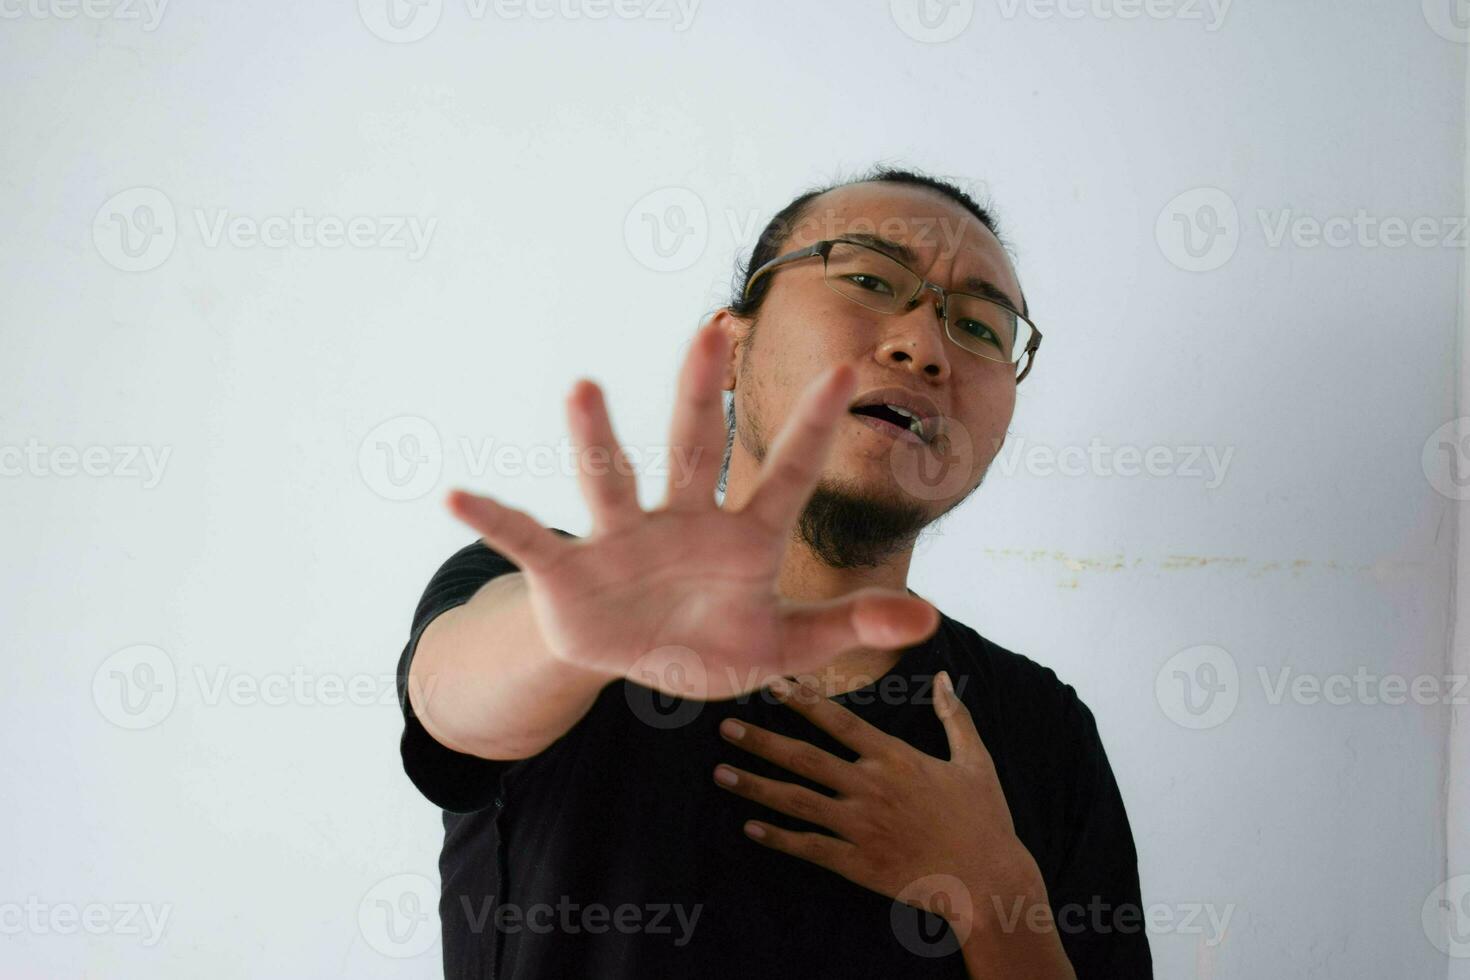 Erwachsene asiatisch Mann tragen schwarz T-Shirt foto